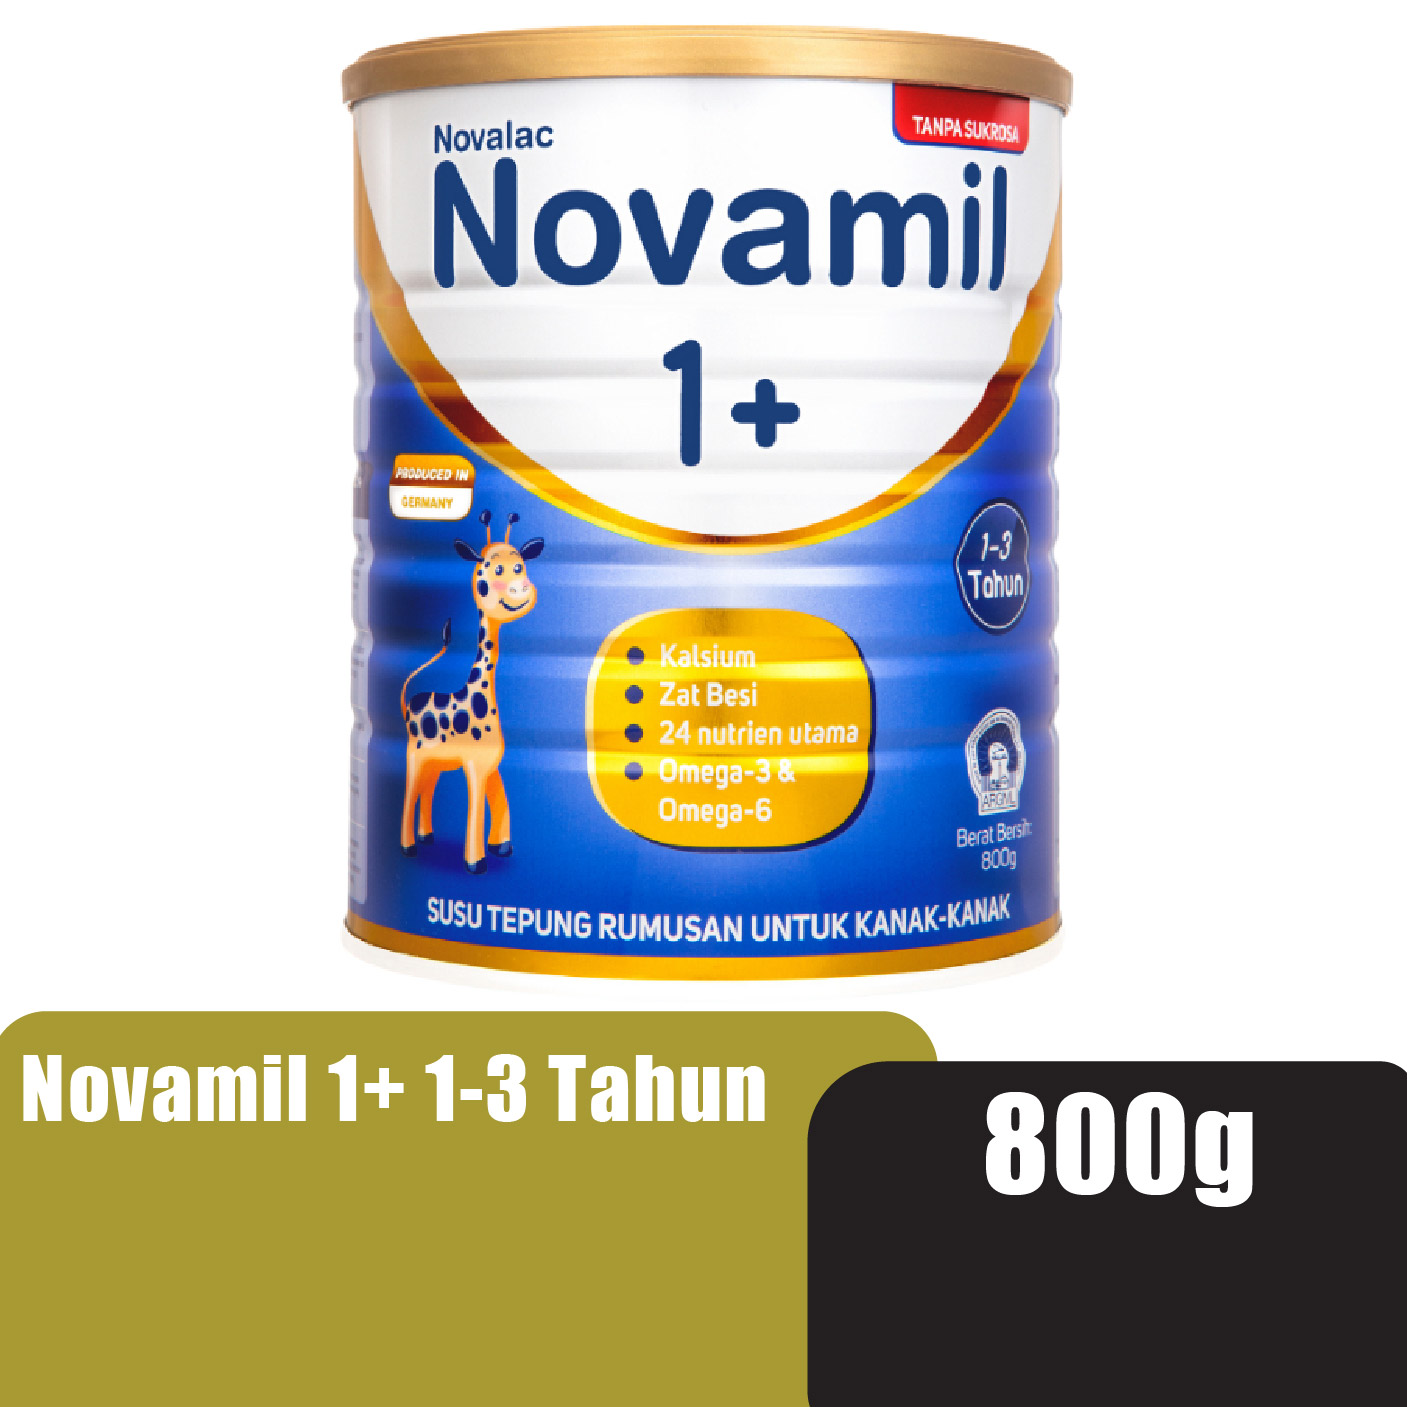 Novamil 1+ (1-3 Tahun) 800g